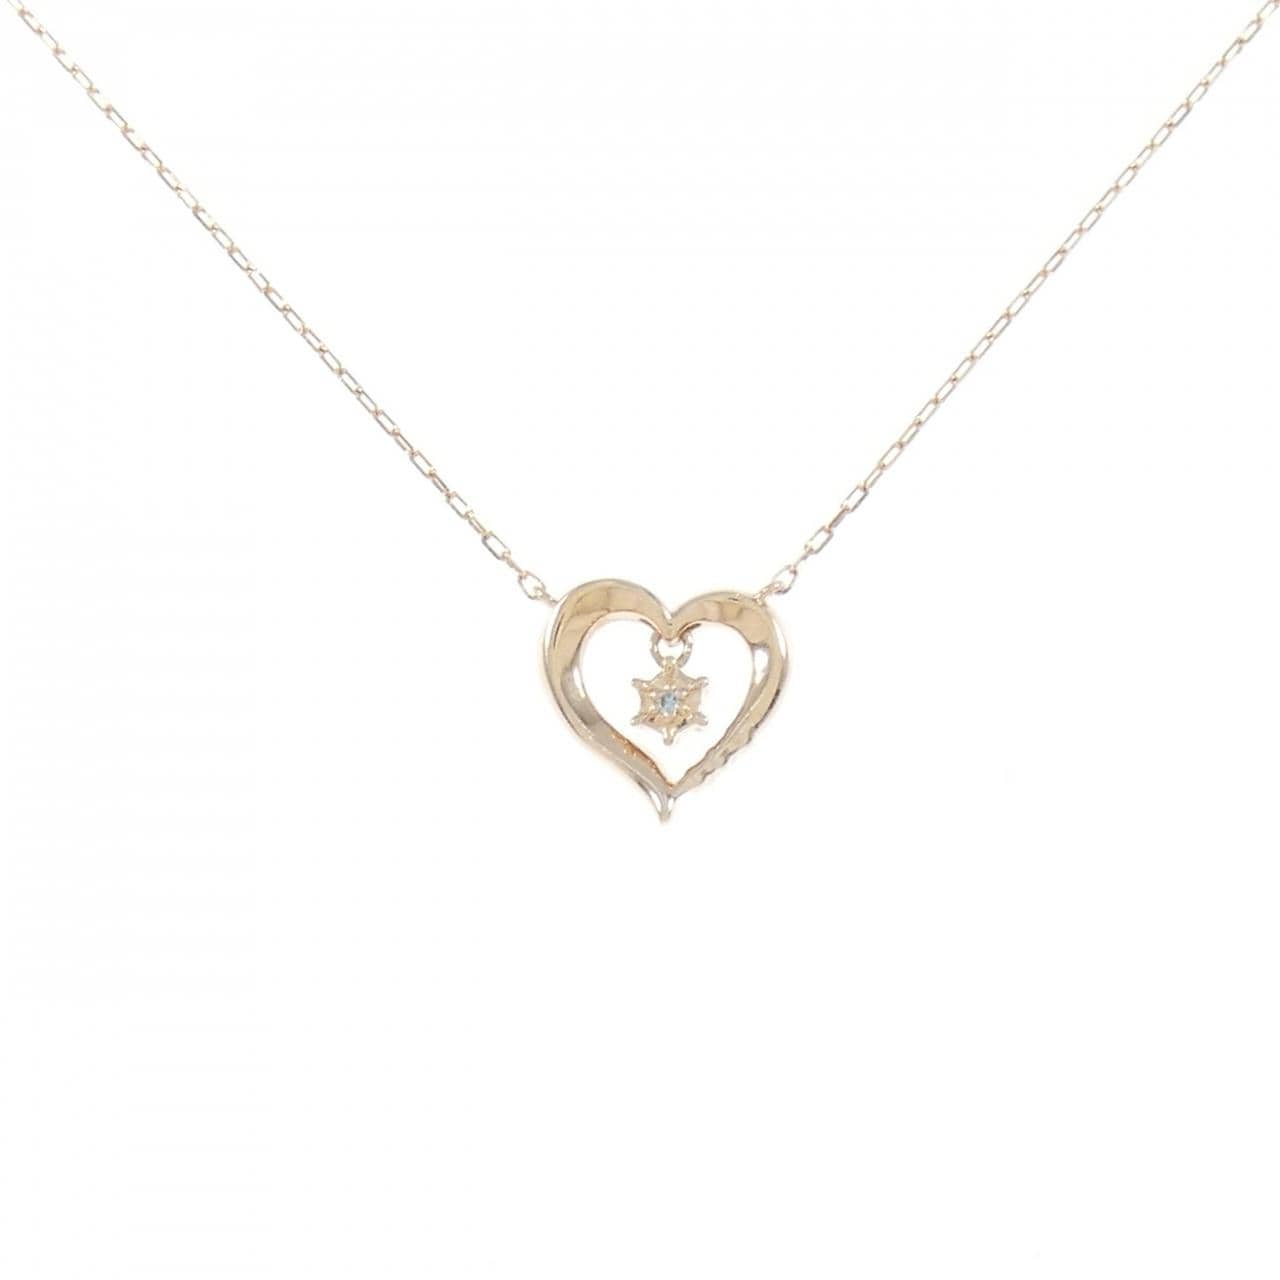 4゜C heart white Topaz necklace